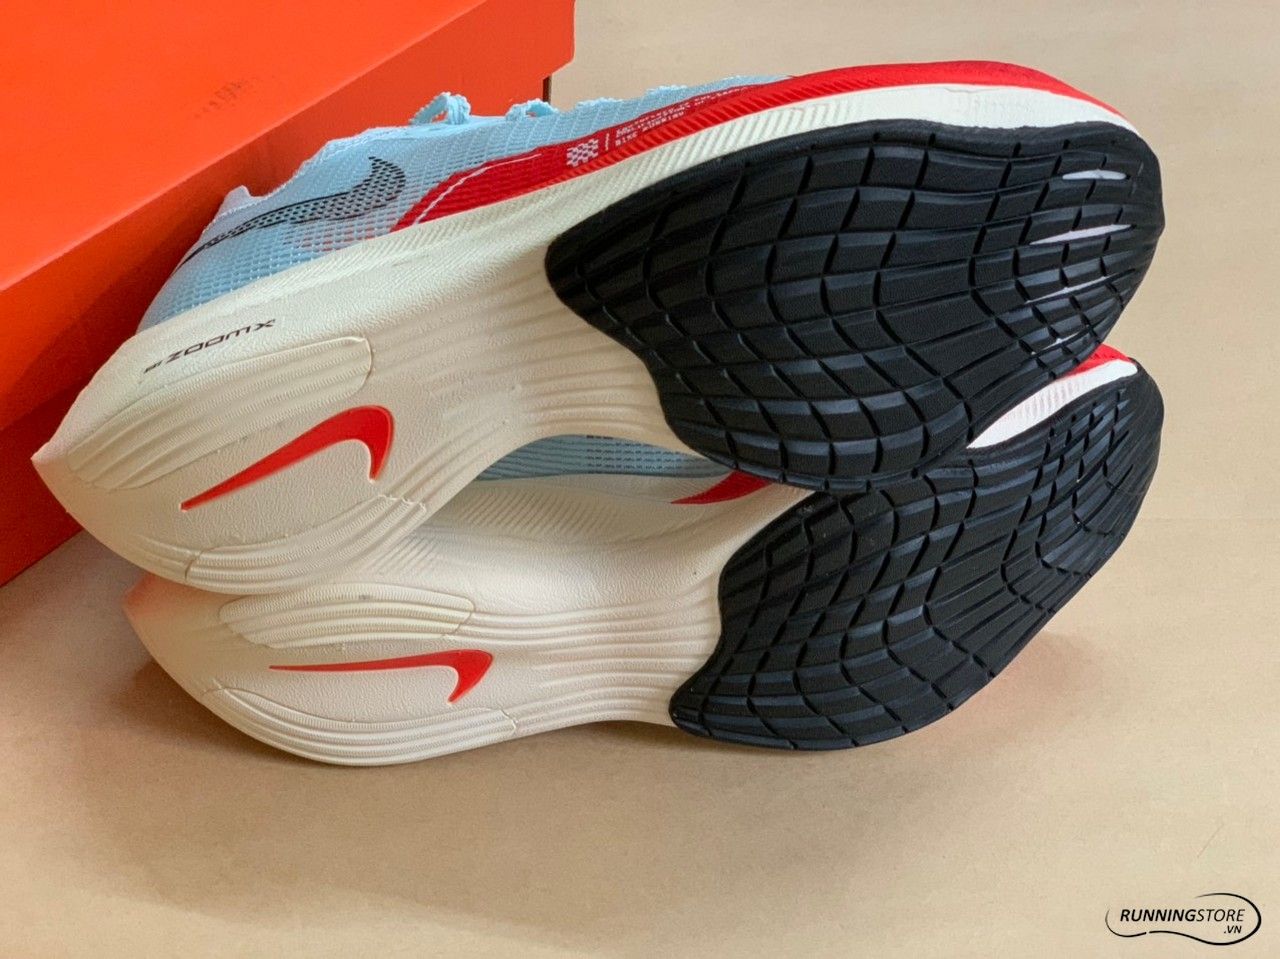 Nike Zoomx Vaporfly Next% - CU4111-400